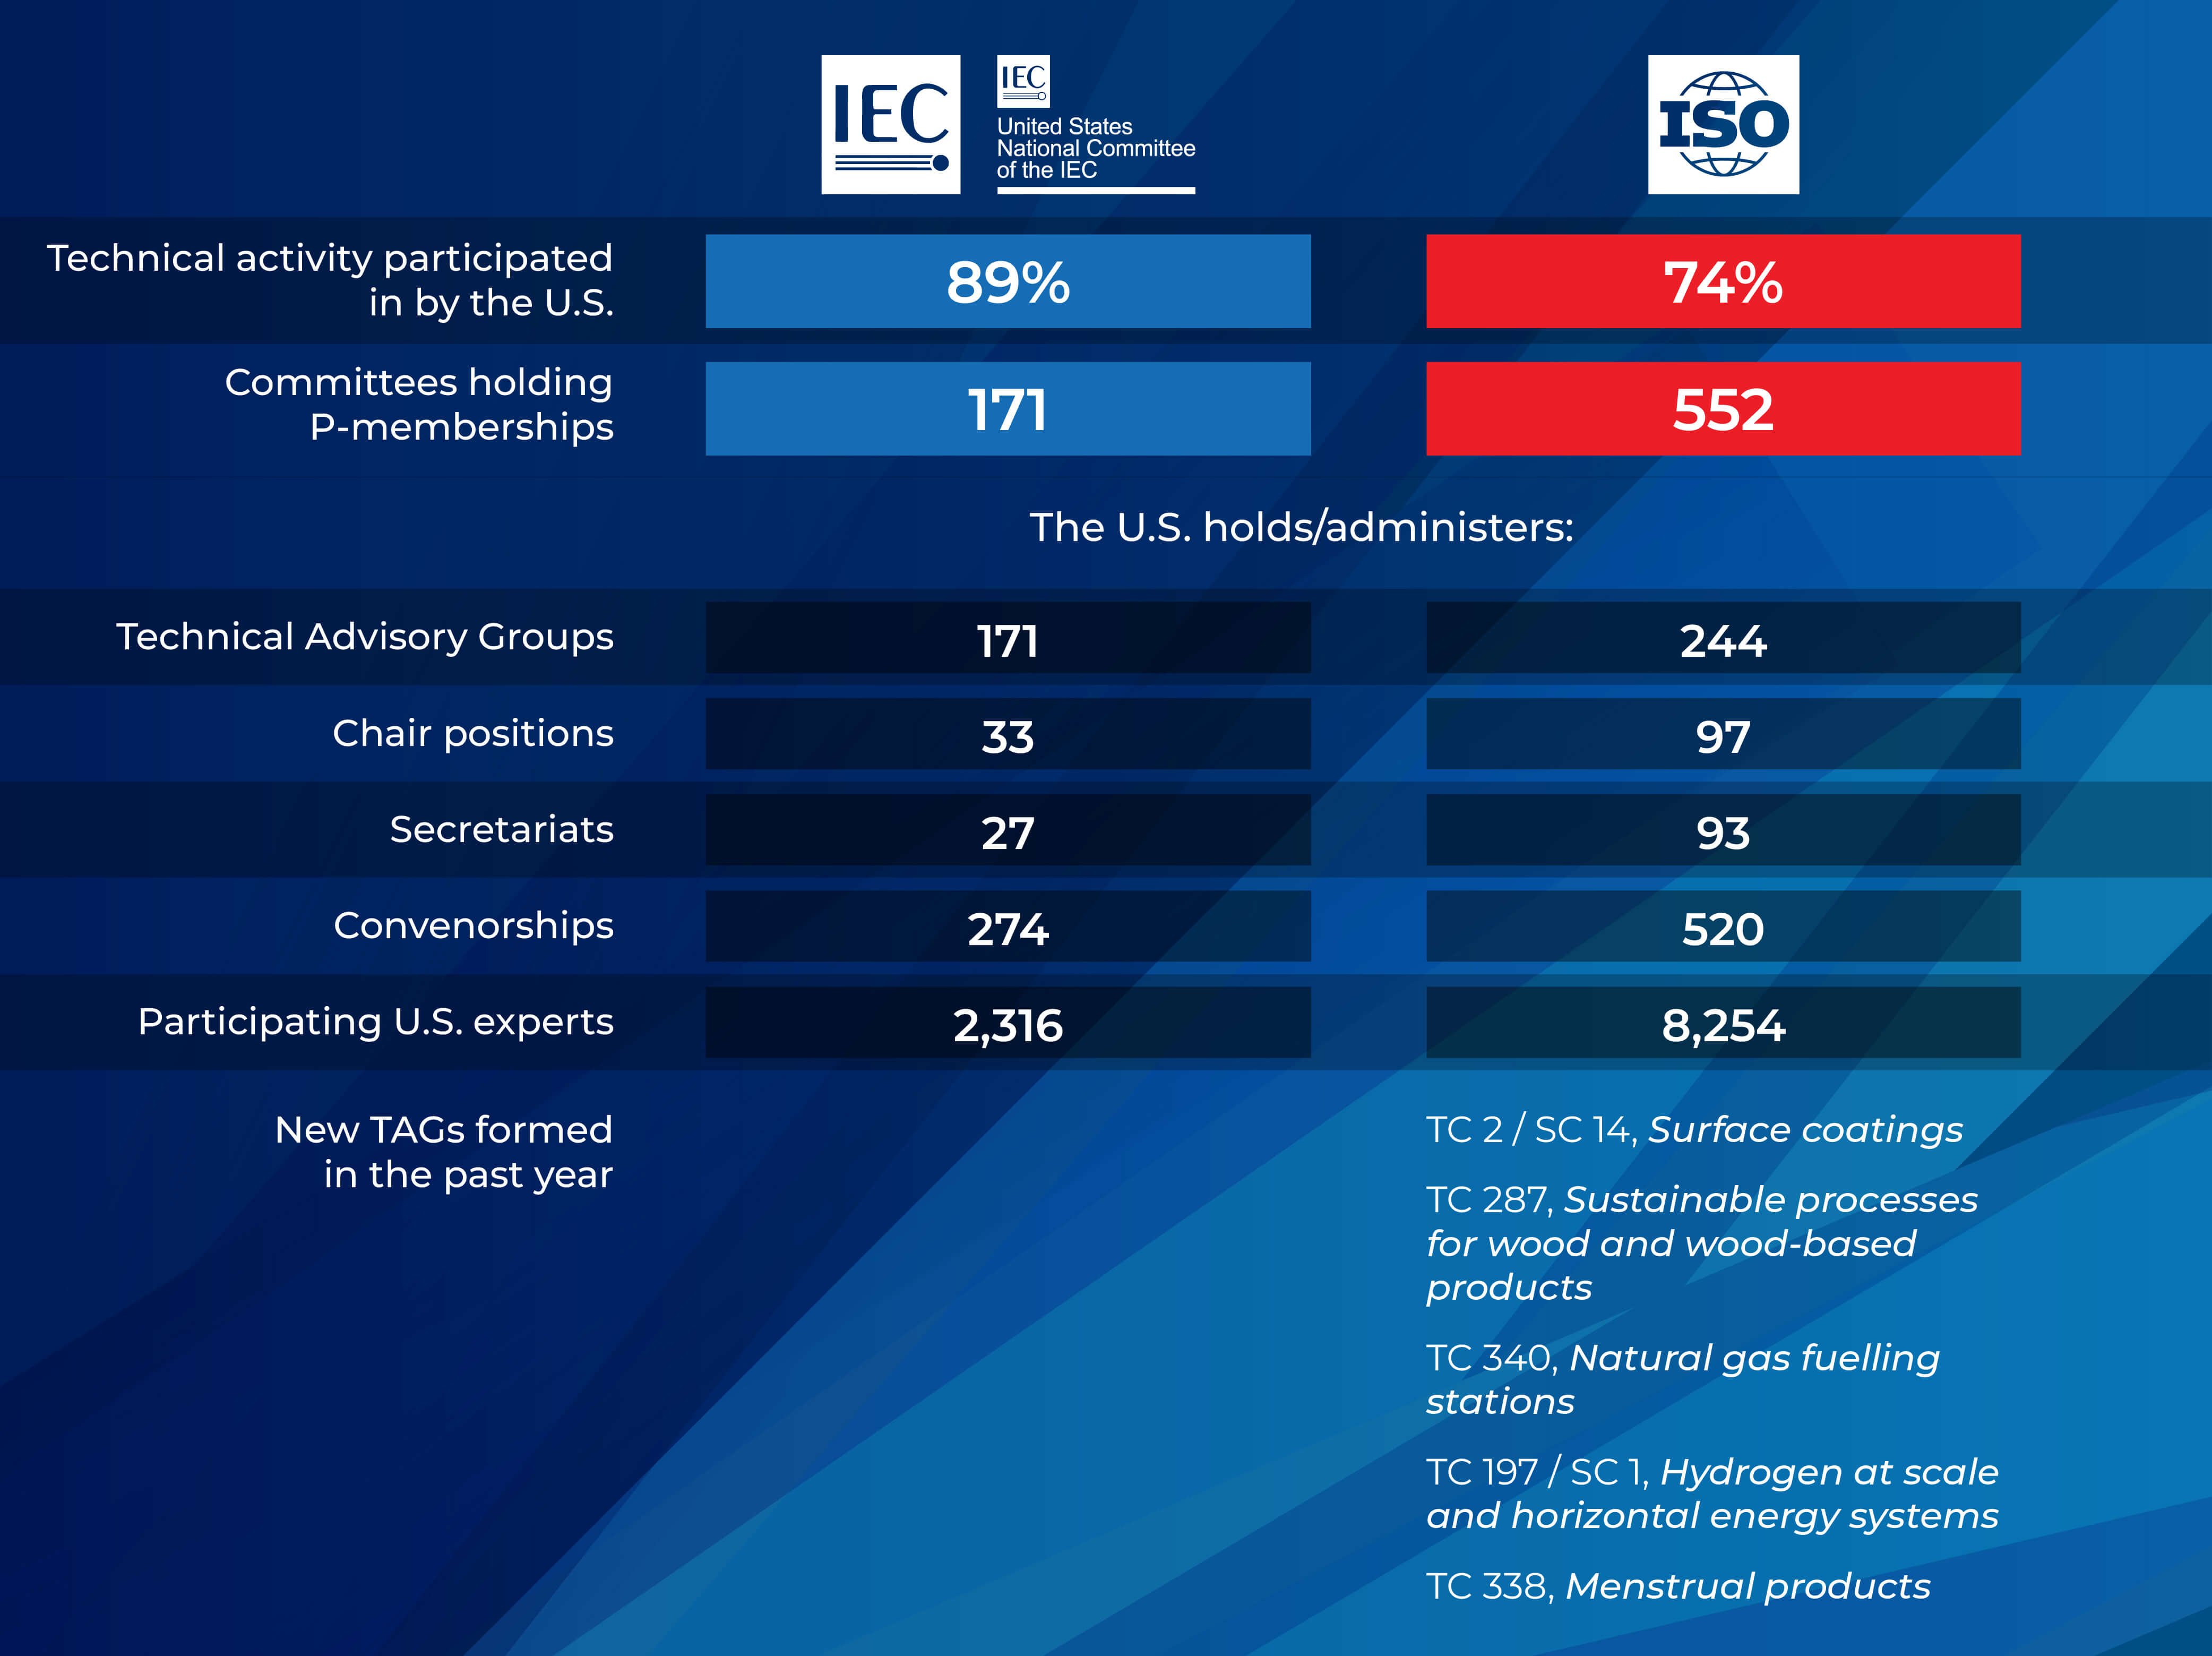 U.S. ISO and IEC activities